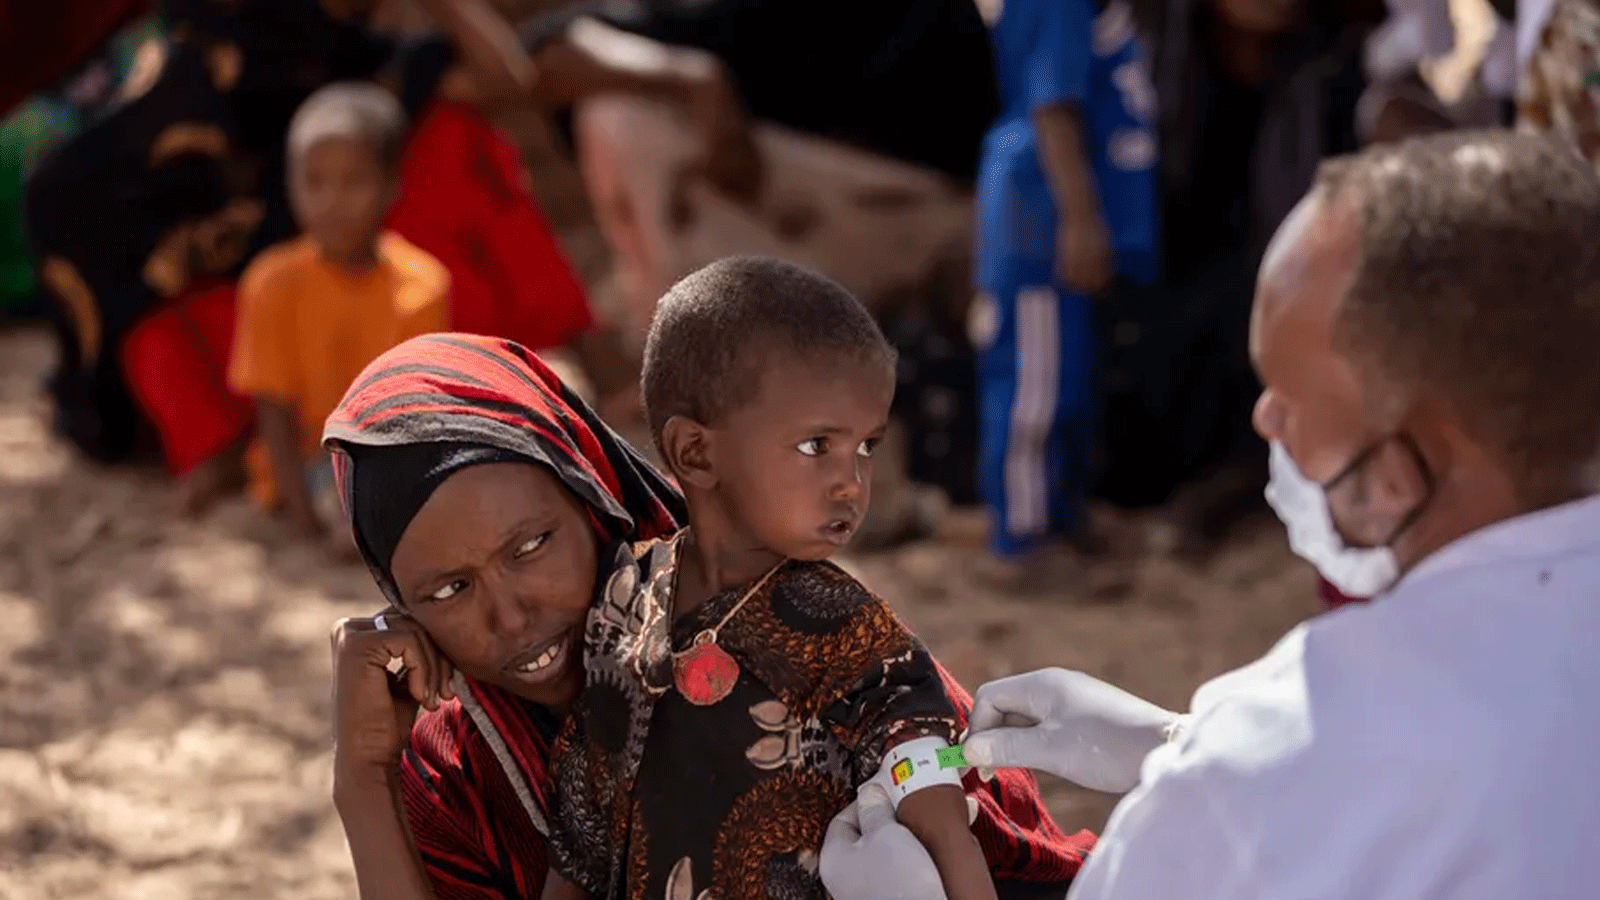 الطفلة البالغة من العمر عامين وتعاني من الإسهال والقيء، تتلقى العلاج من سوء التغذية في عيادة متنقلة تدعمها اليونيسف في قرية باراري، هيغلولي ووريدا، المنطقة الصومالية. (اليونيسف)